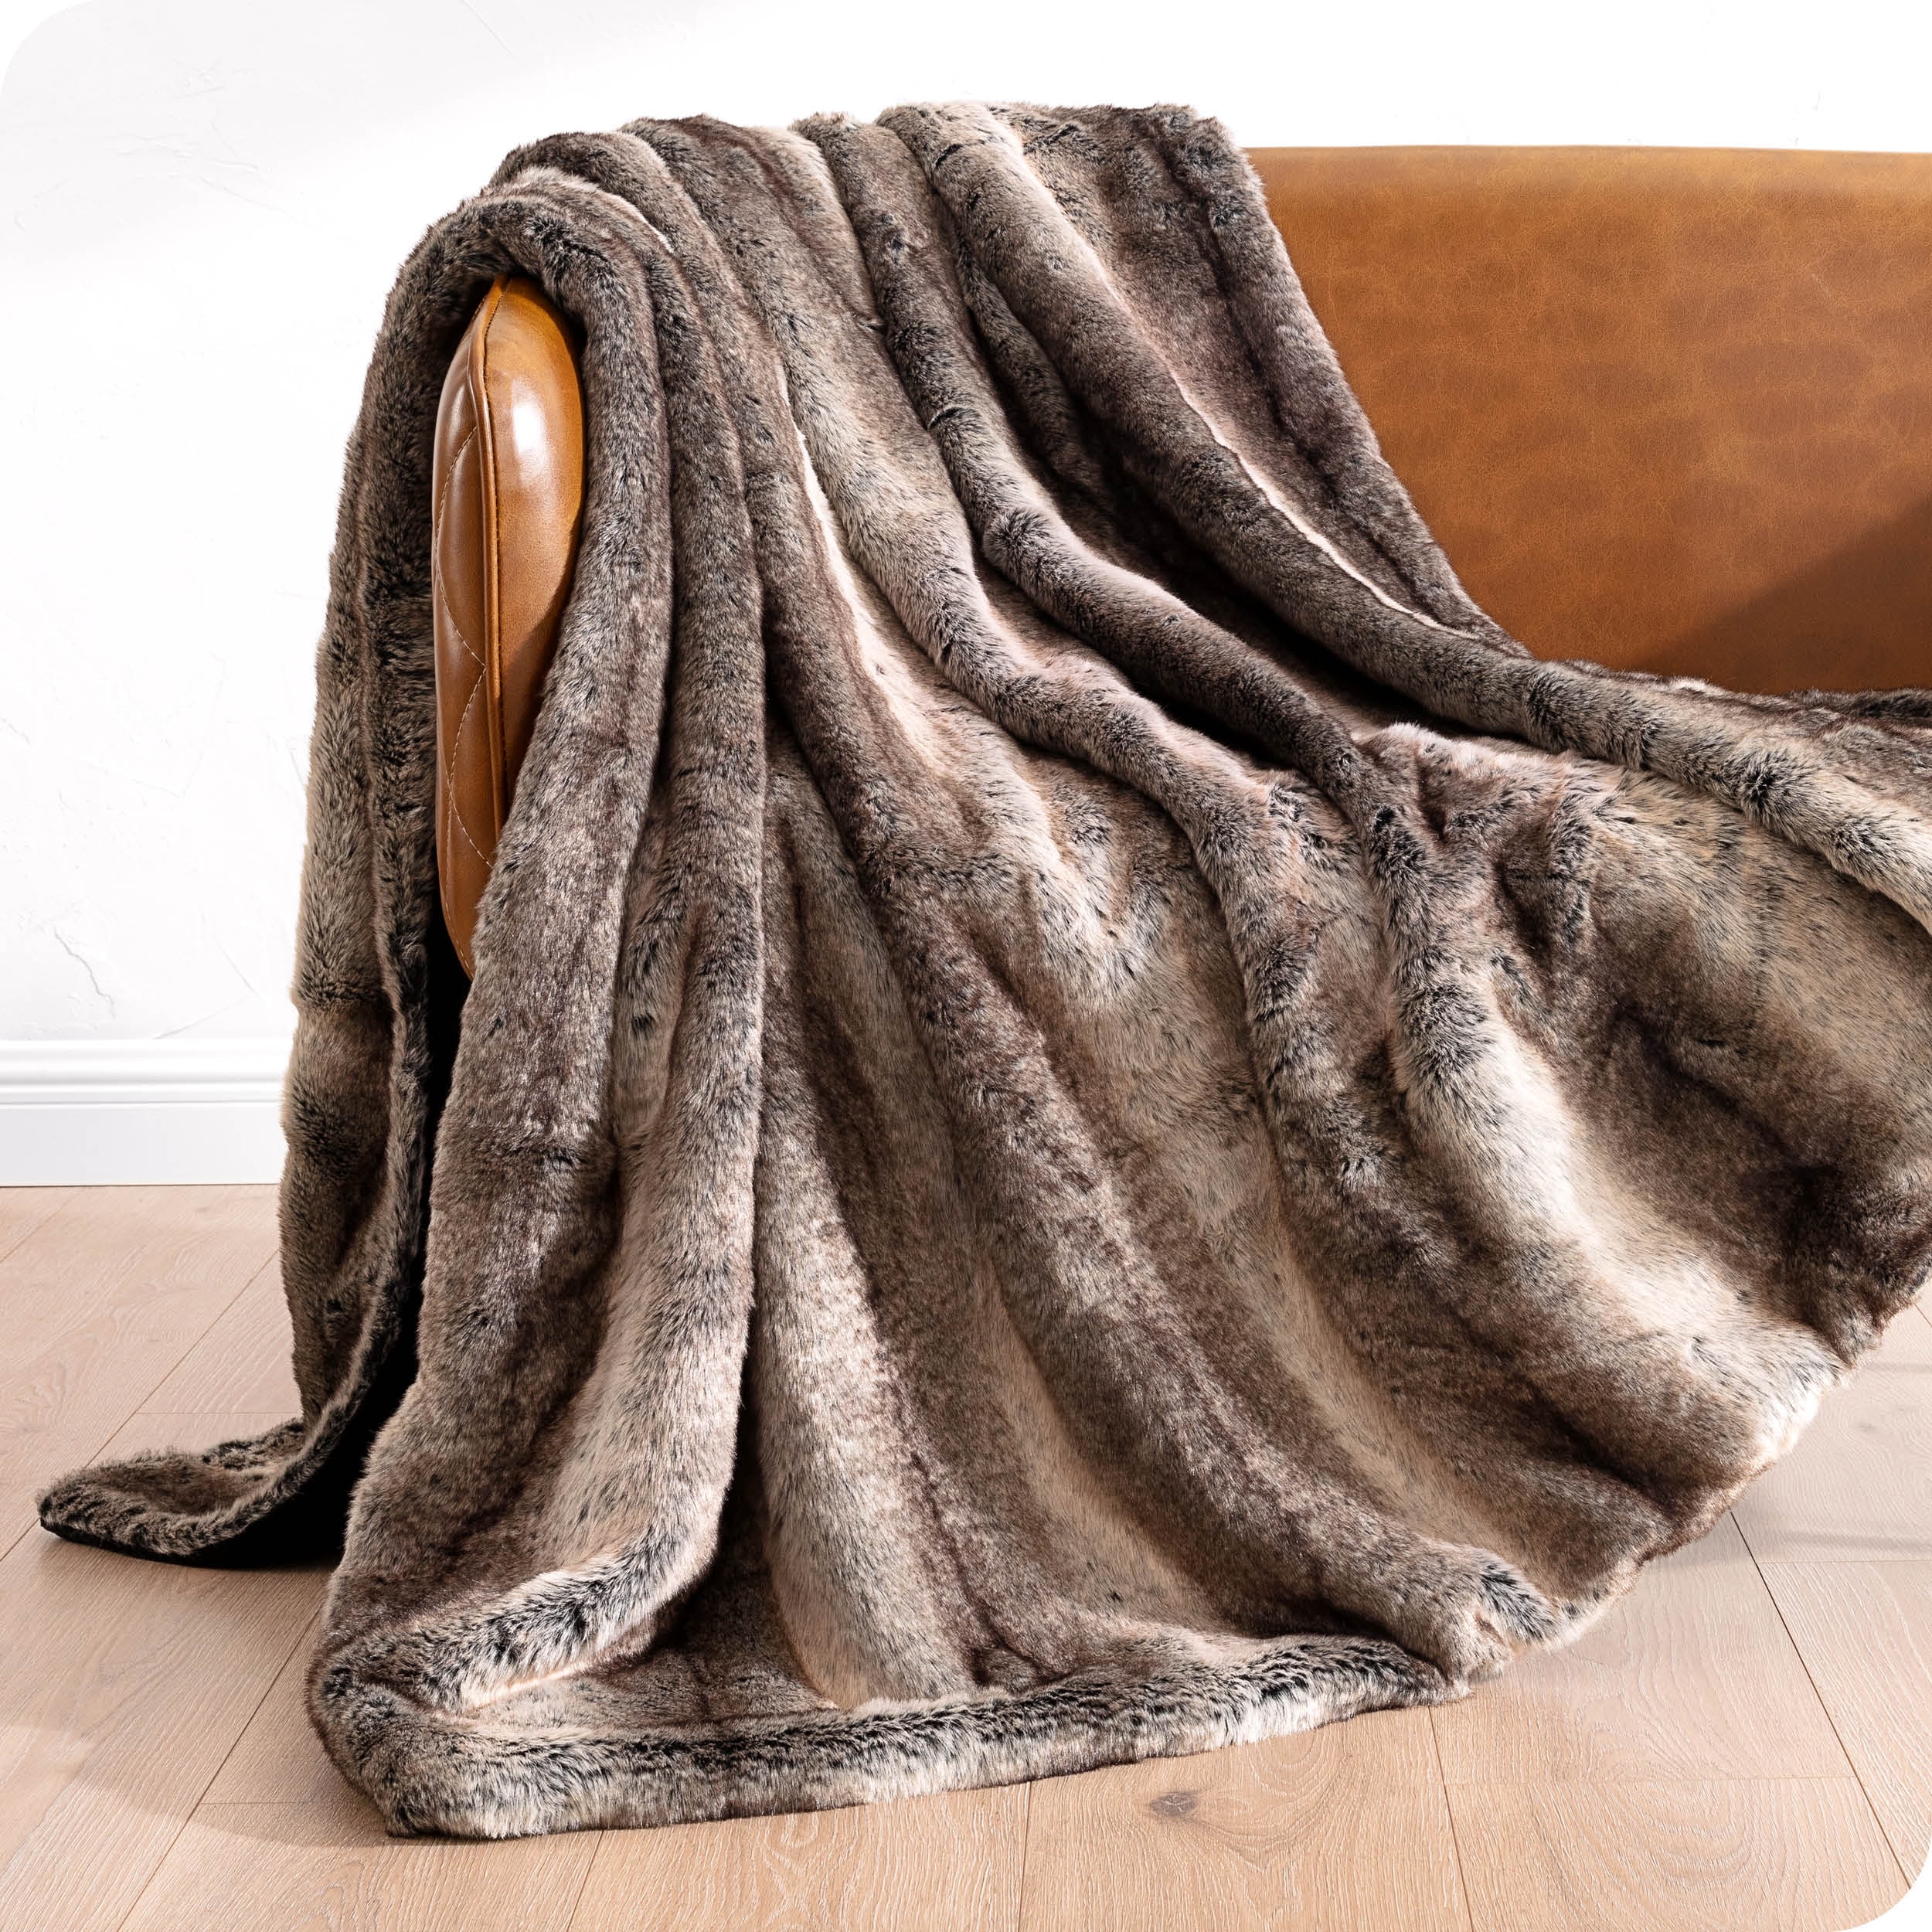 Zebra Suede-Hemmed Patterned Small Blanket